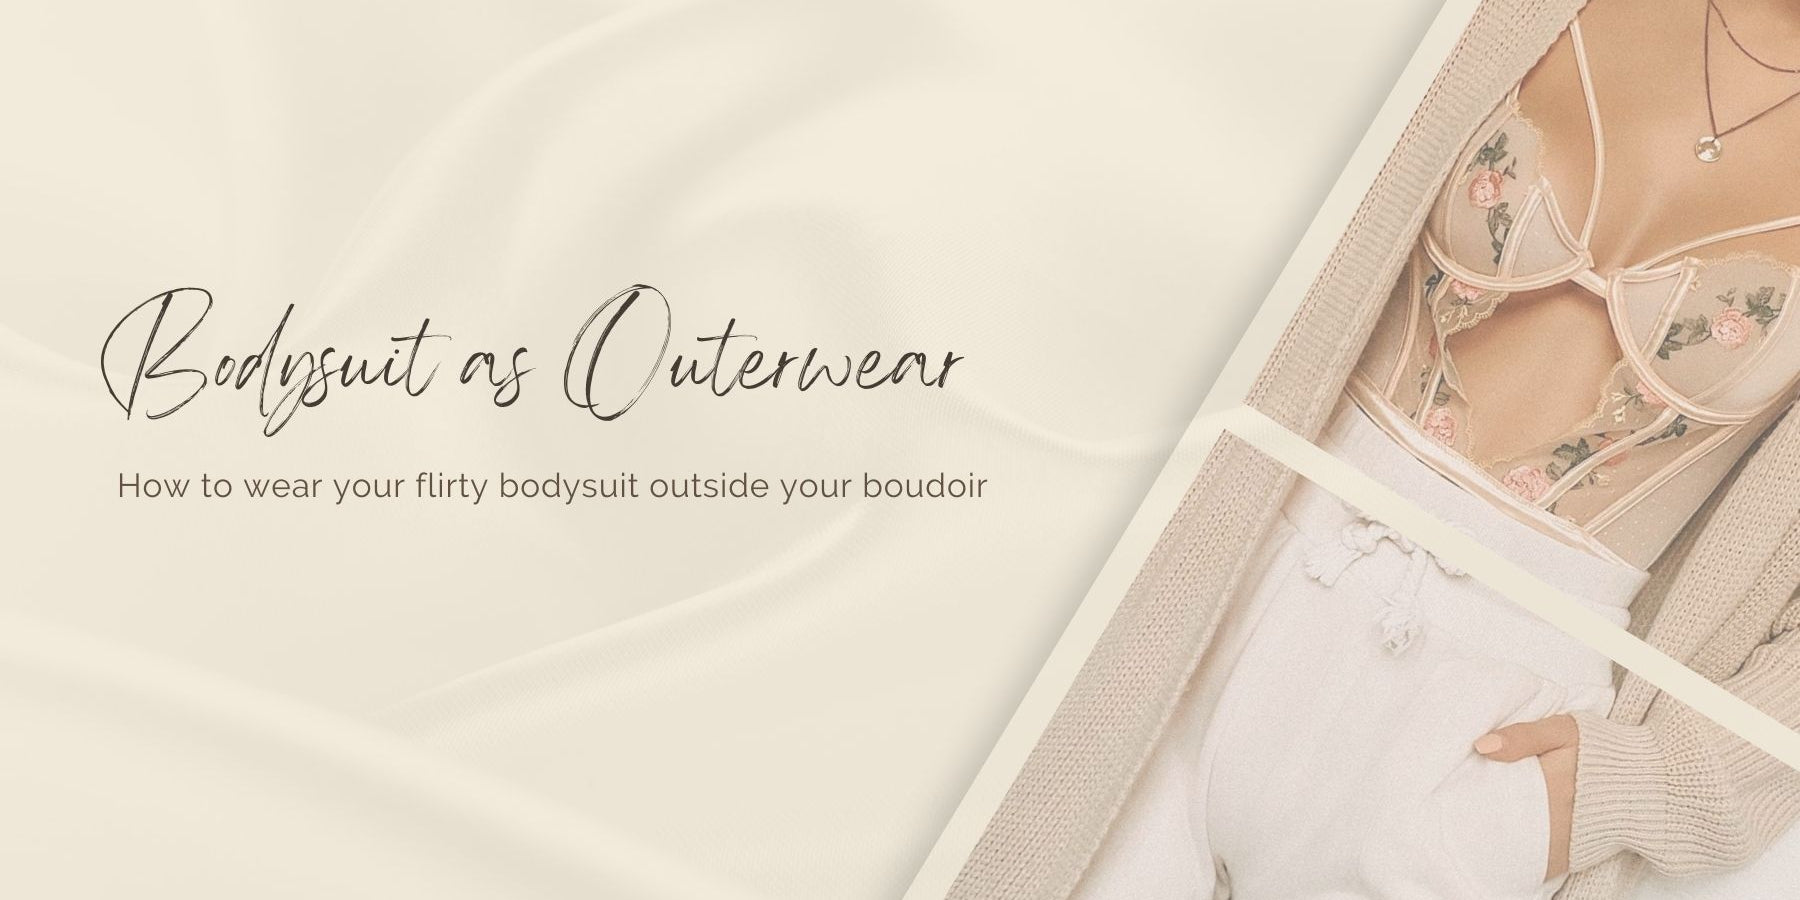 Lingerie Bodysuits As Outerwear: 5 Ways to Wear a Bodysuit Outside